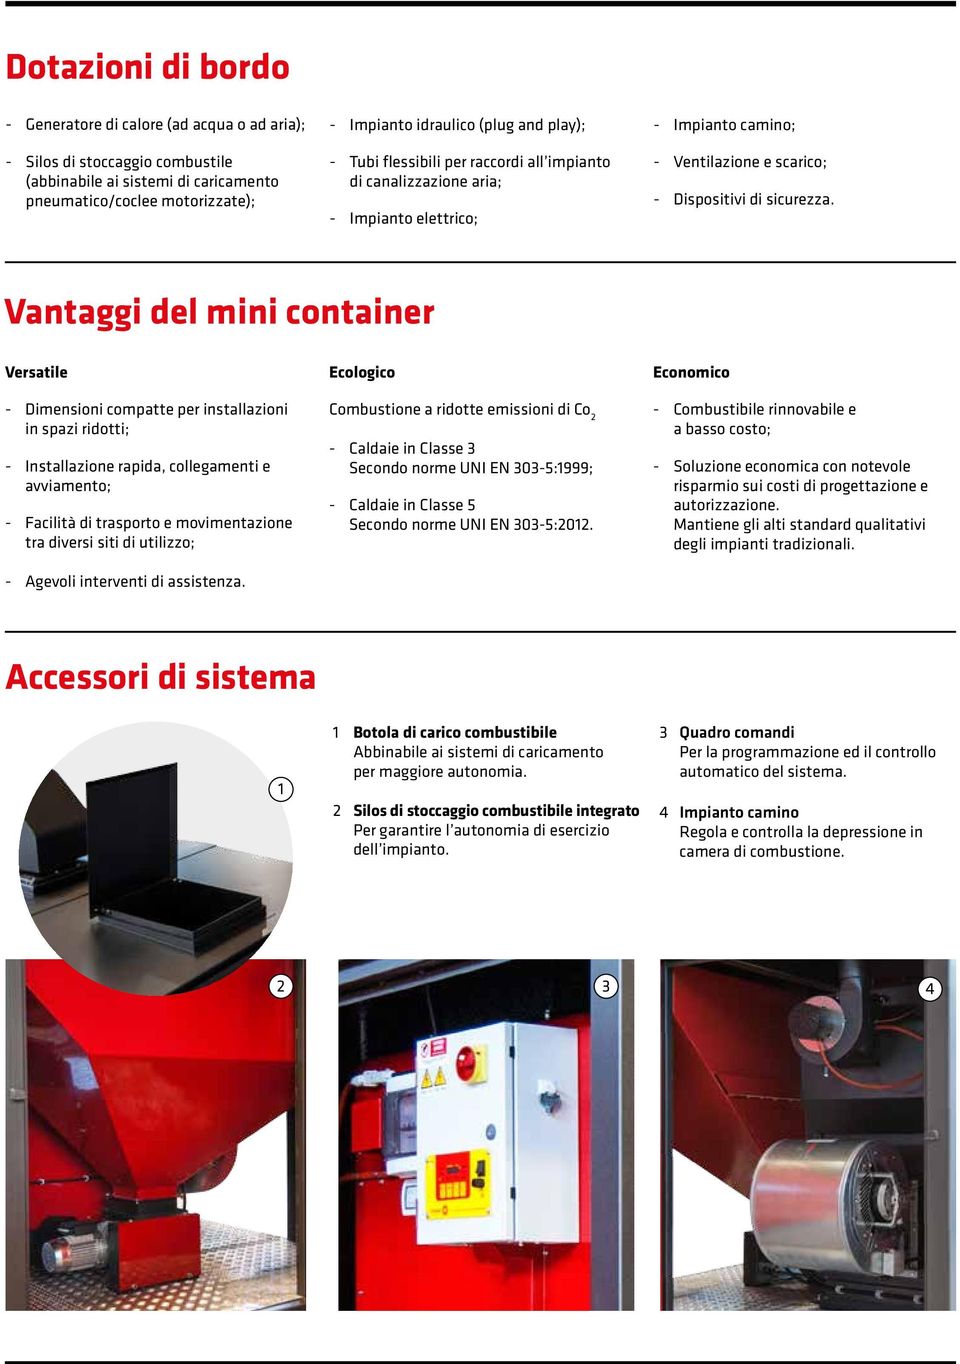 Vantaggi del mini container Versatile - Dimensioni compatte per installazioni in spazi ridotti; - Installazione rapida, collegamenti e avviamento; - Facilità di trasporto e movimentazione tra diversi